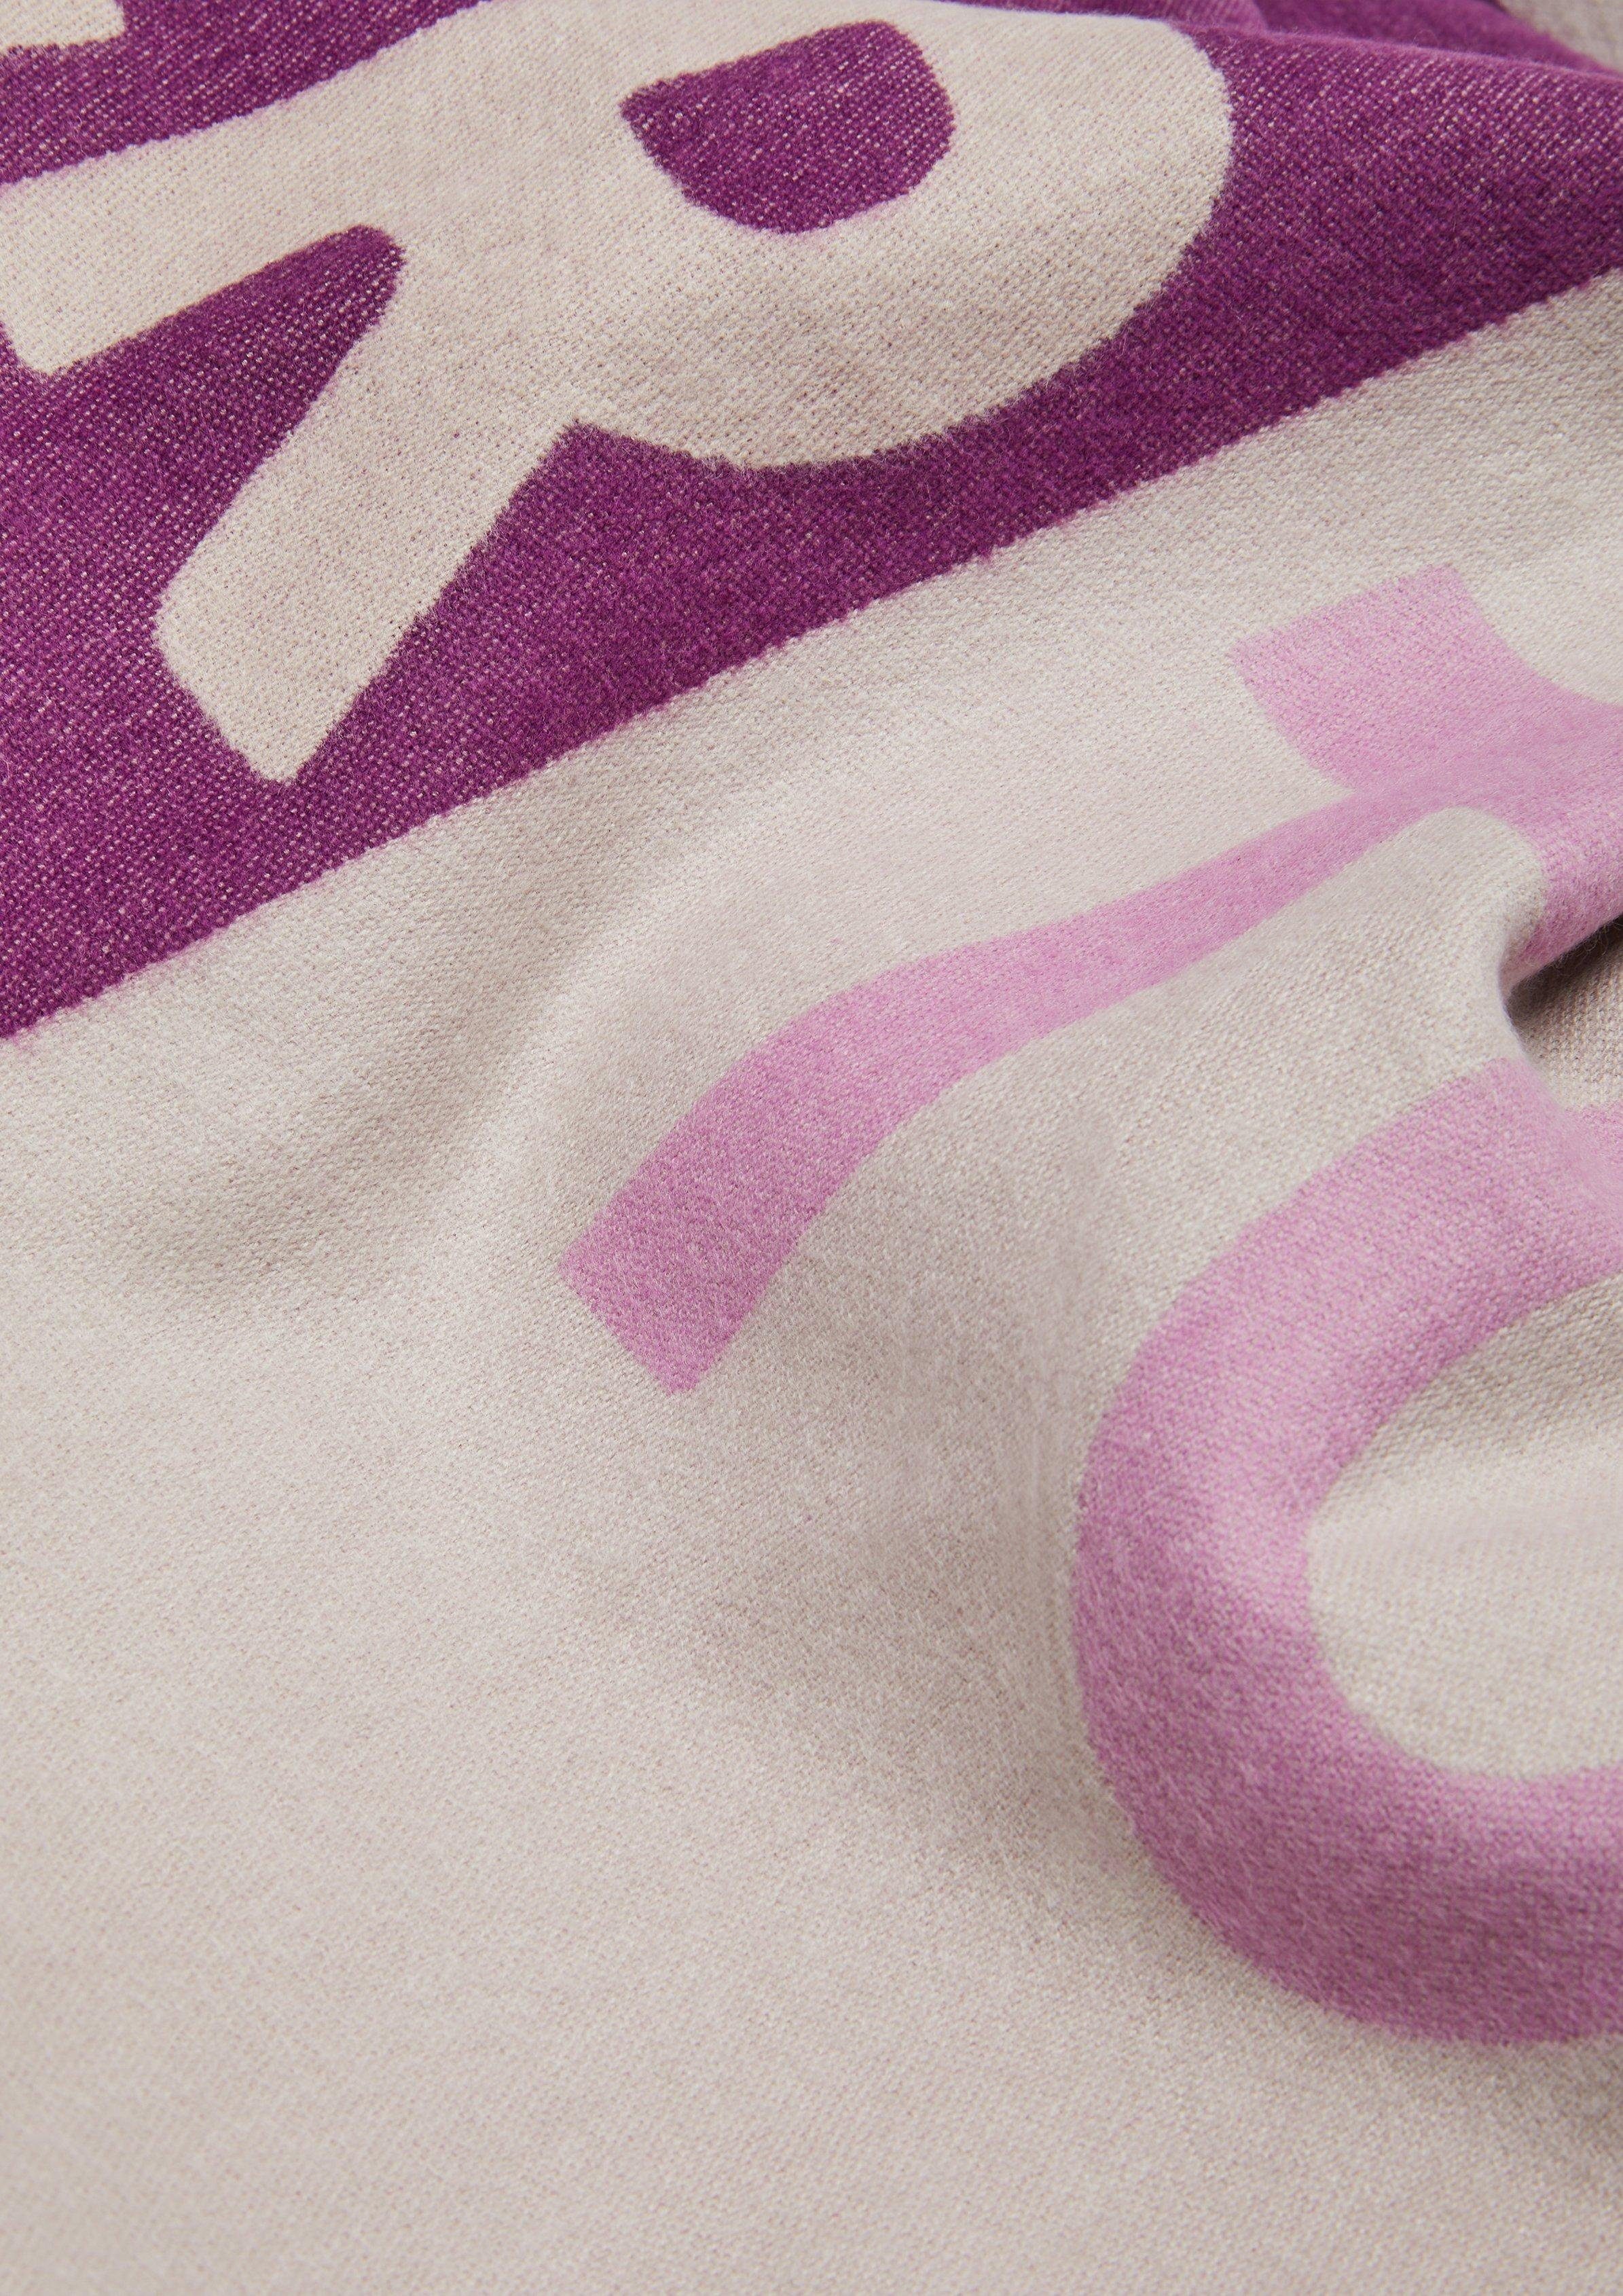 purple in Fransen Colour-Blocking-Optik, placed prin Halstuch Schal Comma